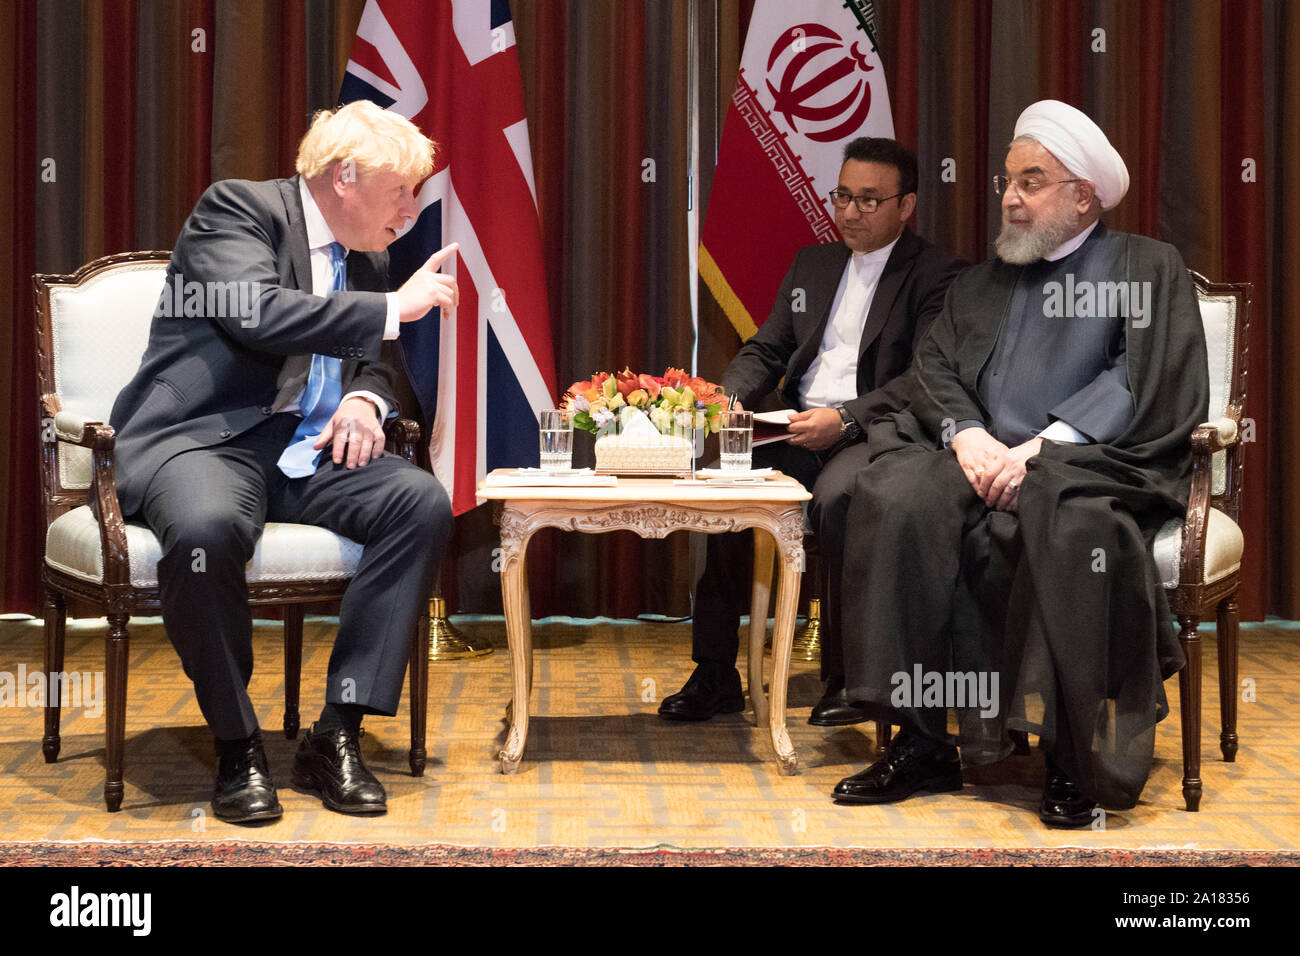 Premier ministre Boris Johnson (à gauche) rencontre le président iranien Hassan Rohani (à droite) rencontre à la 74e session de l'Assemblée générale des Nations Unies, au Siège des Nations Unies à New York, USA. Banque D'Images